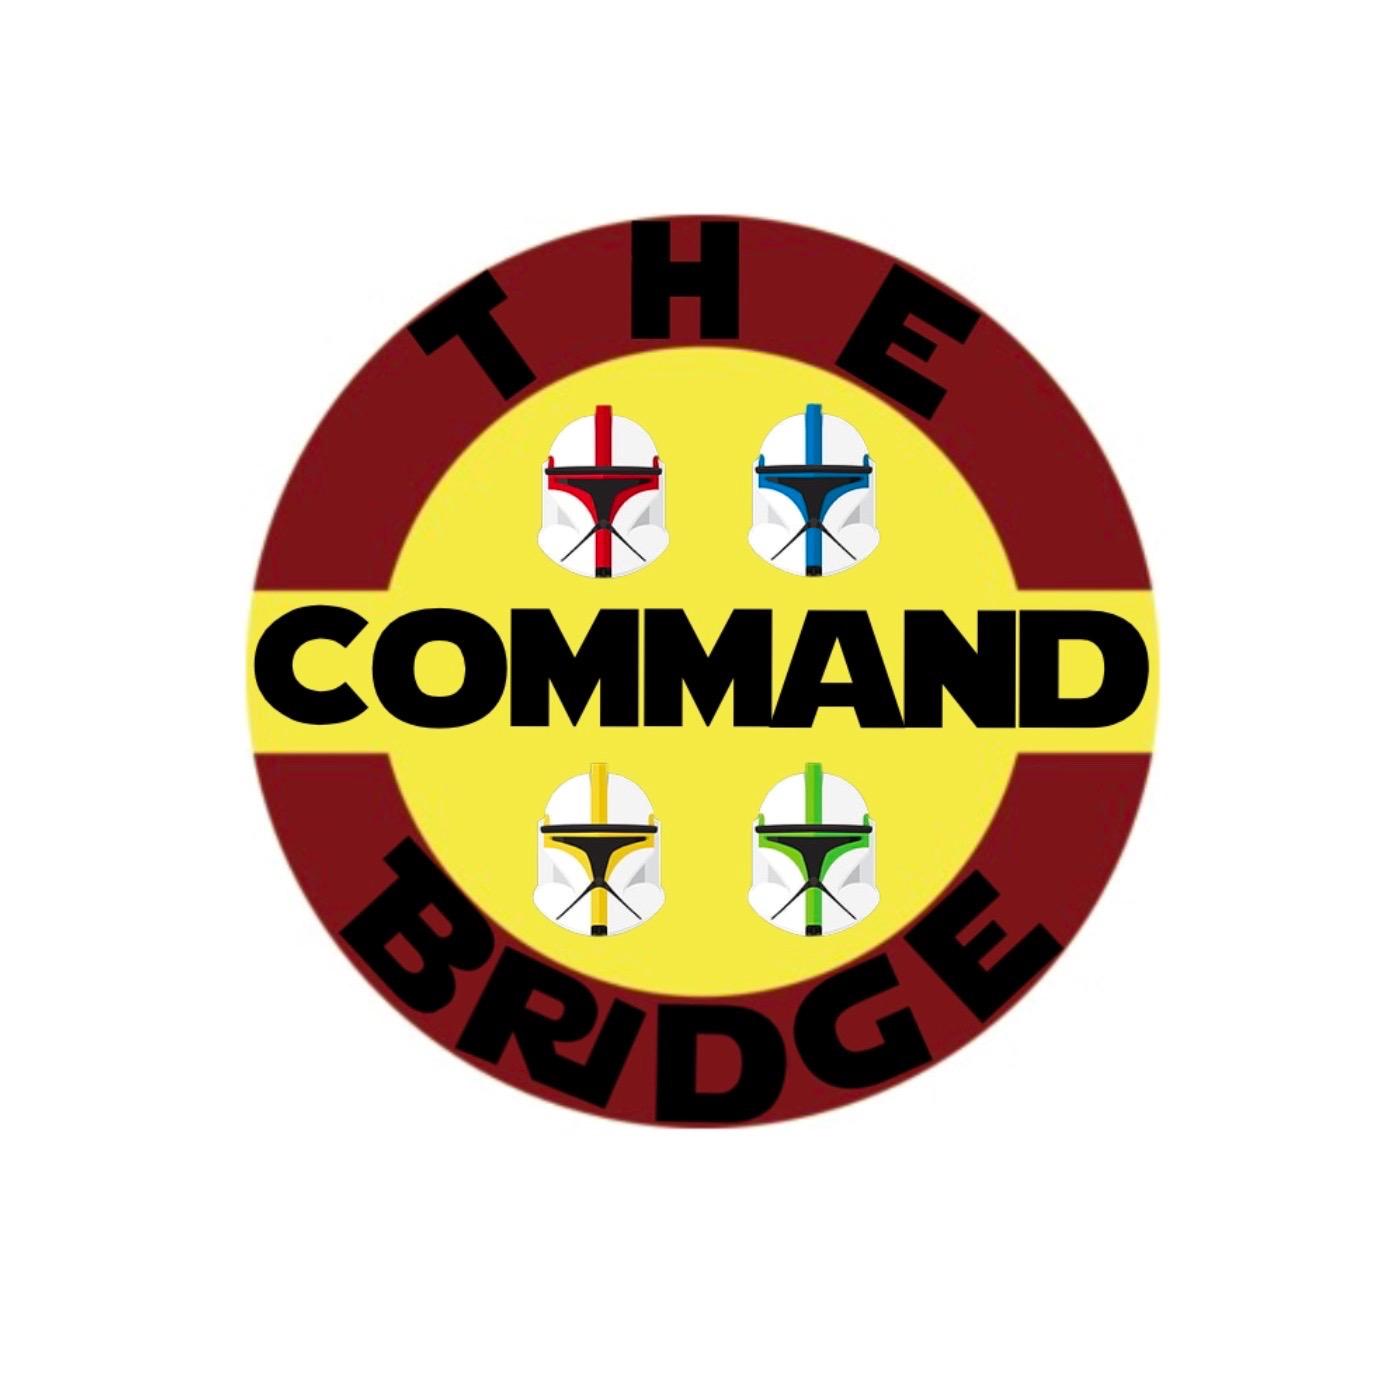 The Command Bridge